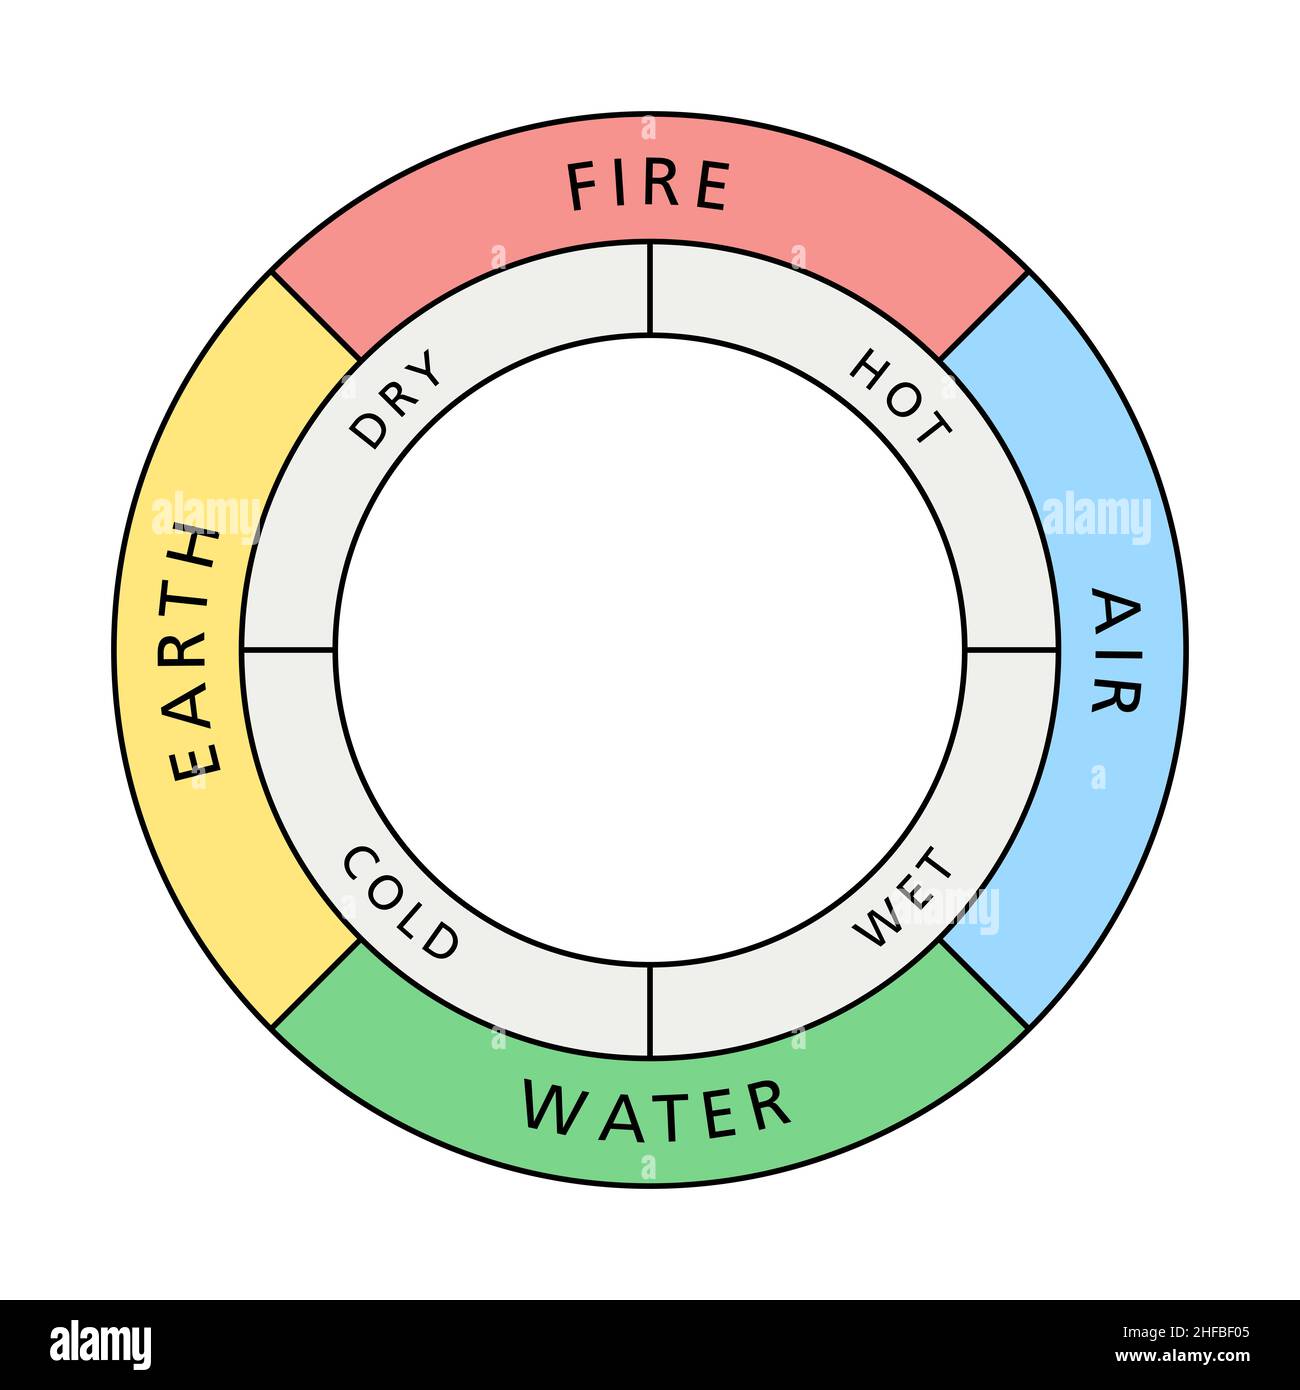 Cerchio colorato dei quattro elementi classici fuoco, terra, acqua e aria, con le loro qualità associate caldo, secco, freddo e bagnato. Foto Stock